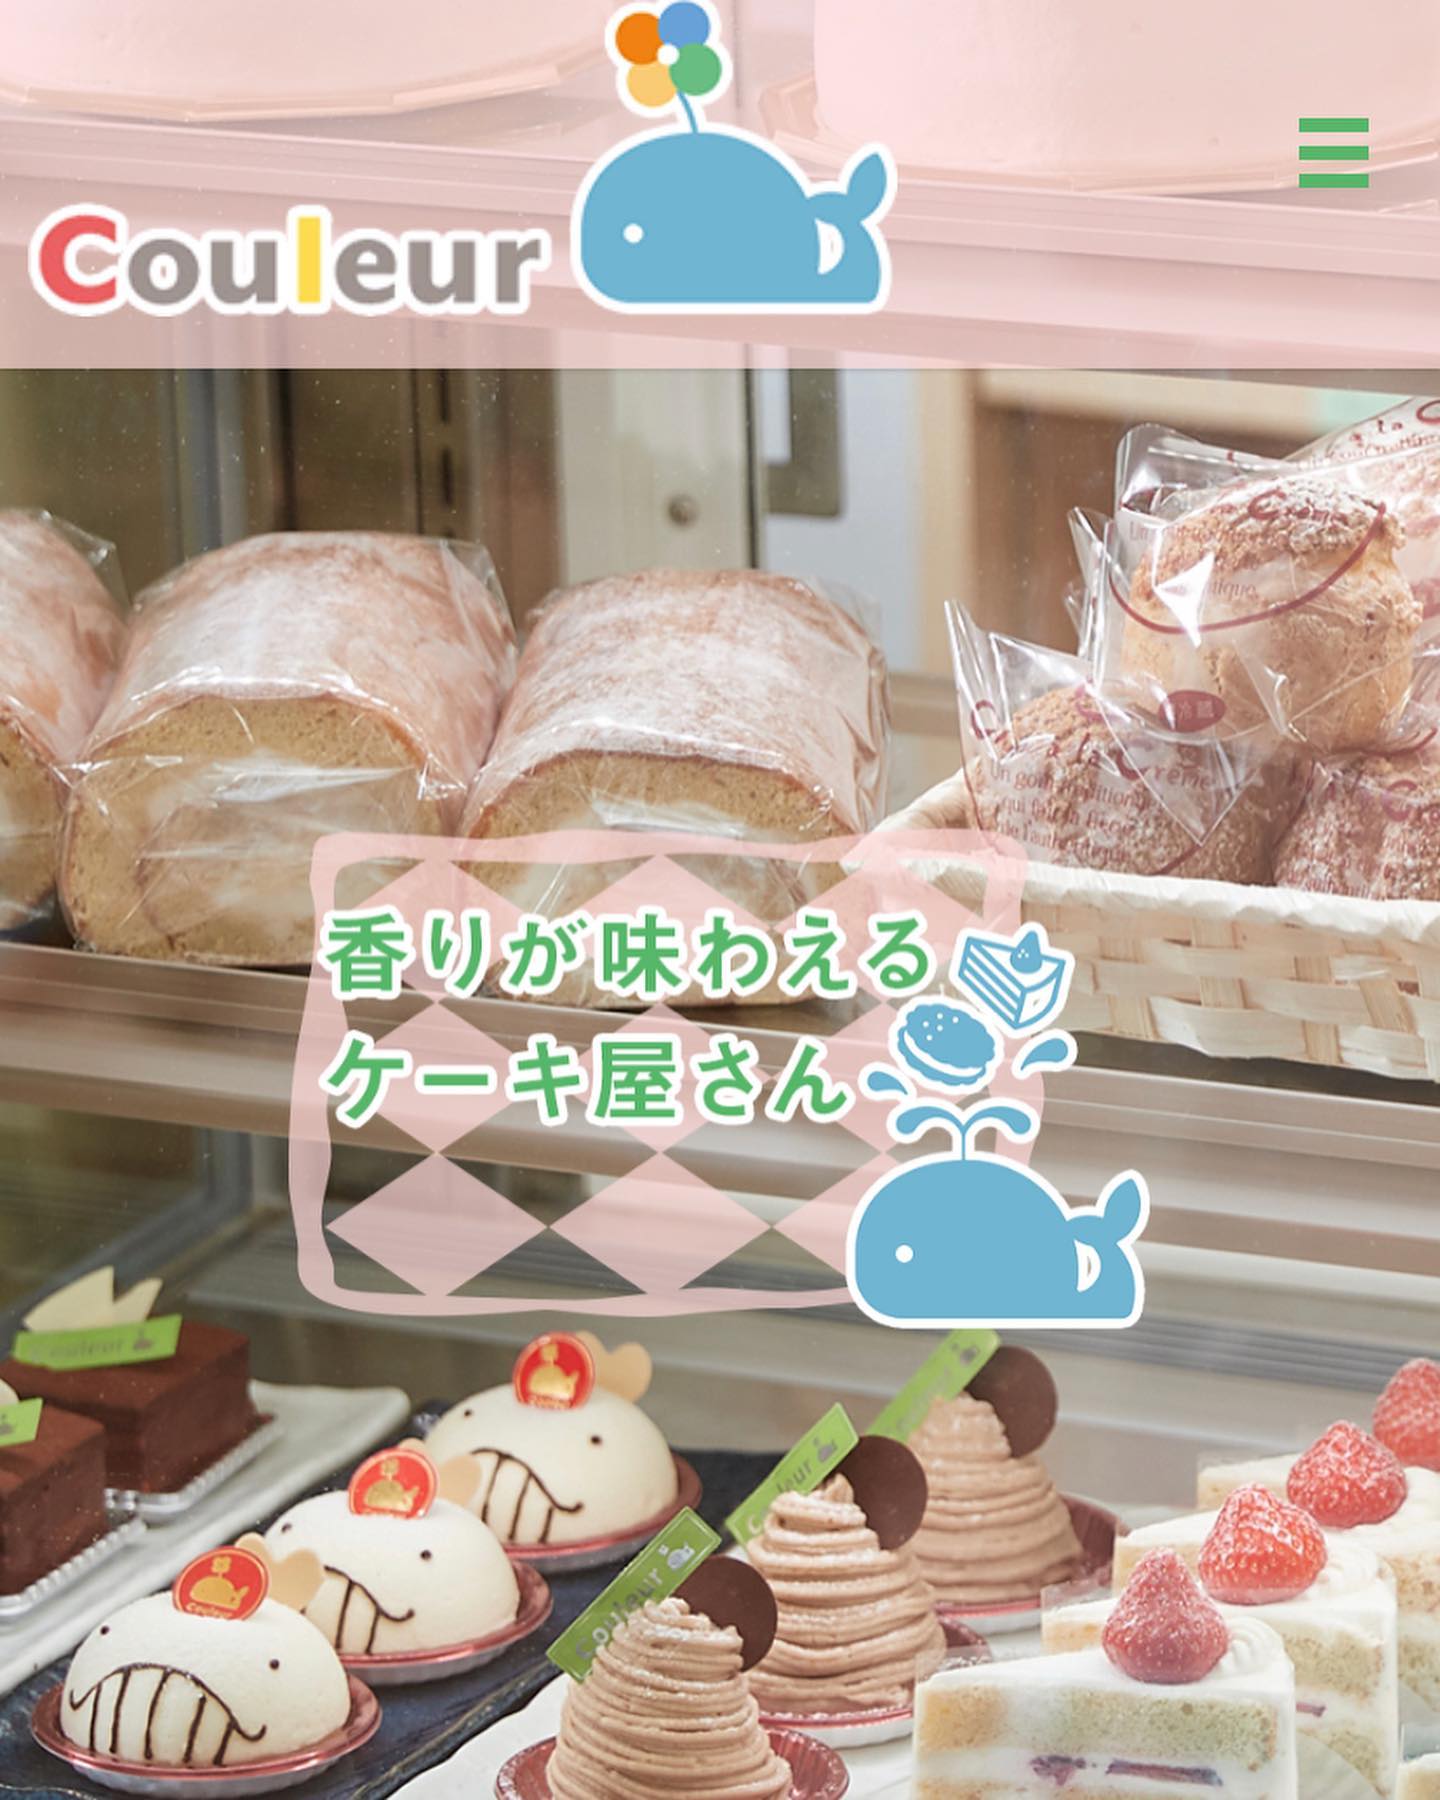 ．．こんにちは️この度、ＨＰができました🖥引き続き、Instagramでも情報を発信していきますが、こちらでもイベント等のご案内をいたしますので、よければ覗きにきてくださいなhttps://www.couleur-cake.jp/．※ケーキ工房Couleurは香りにこだわった商品を提供いたします♪#couleur #クルール#きび糖　#HP#沖縄 #okinawa#cake #sweets #ケーキ #スイーツ#デザート #coffee #コーヒー #珈琲#herbtea  #ハーブティー#ケーキ好きな人と繋がりたい #ハーブティー好きな人と繋がりたい